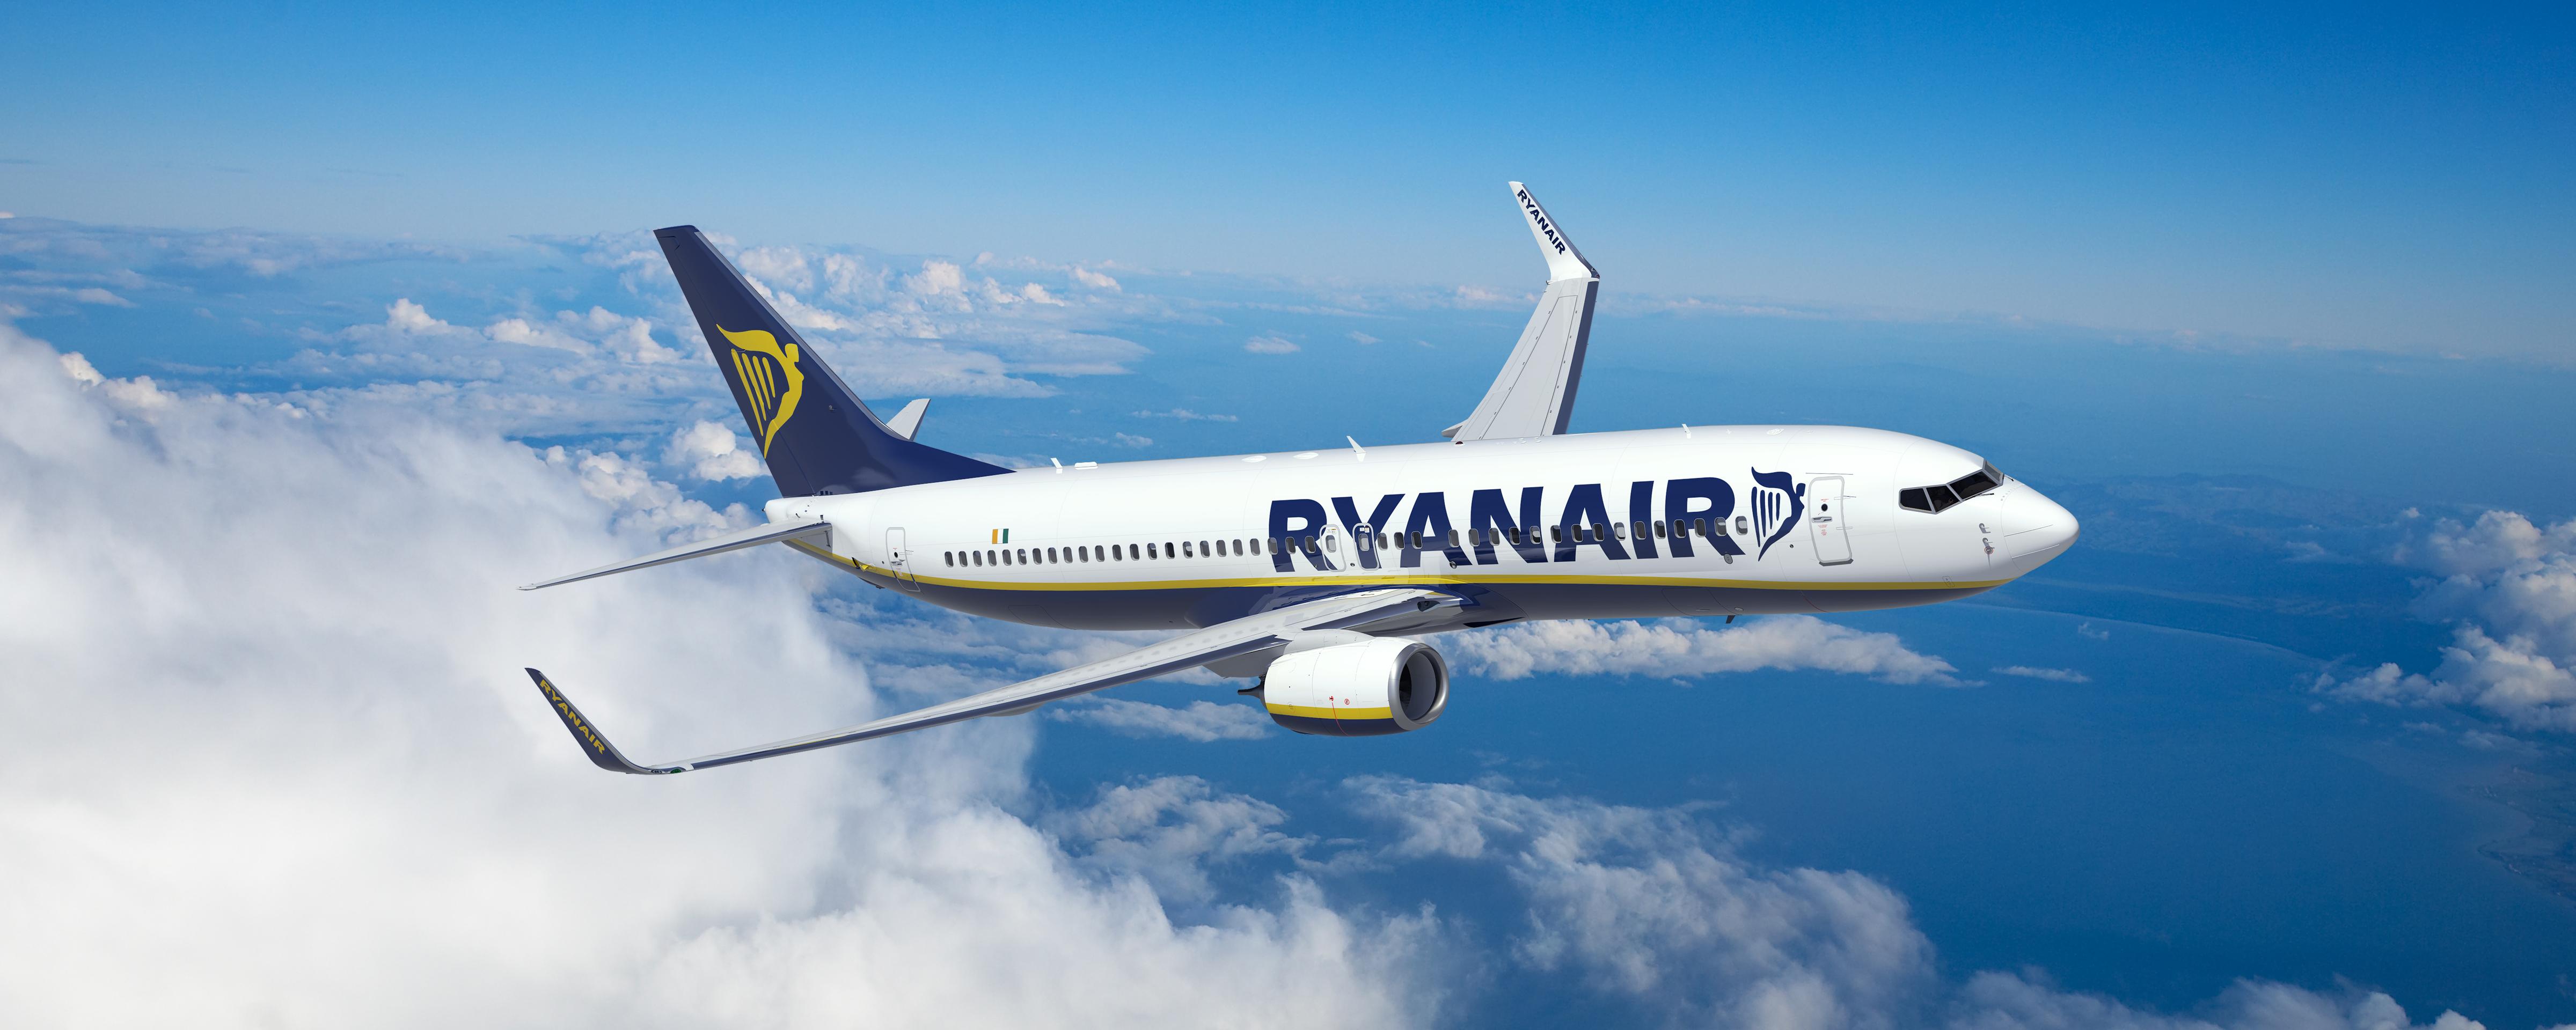 Ryanair Fordert Kunden Auf Handgepäck-Bestimmungen Zu Befolgen, Um Flugverspätungen Im Sommer Zu Vermeiden